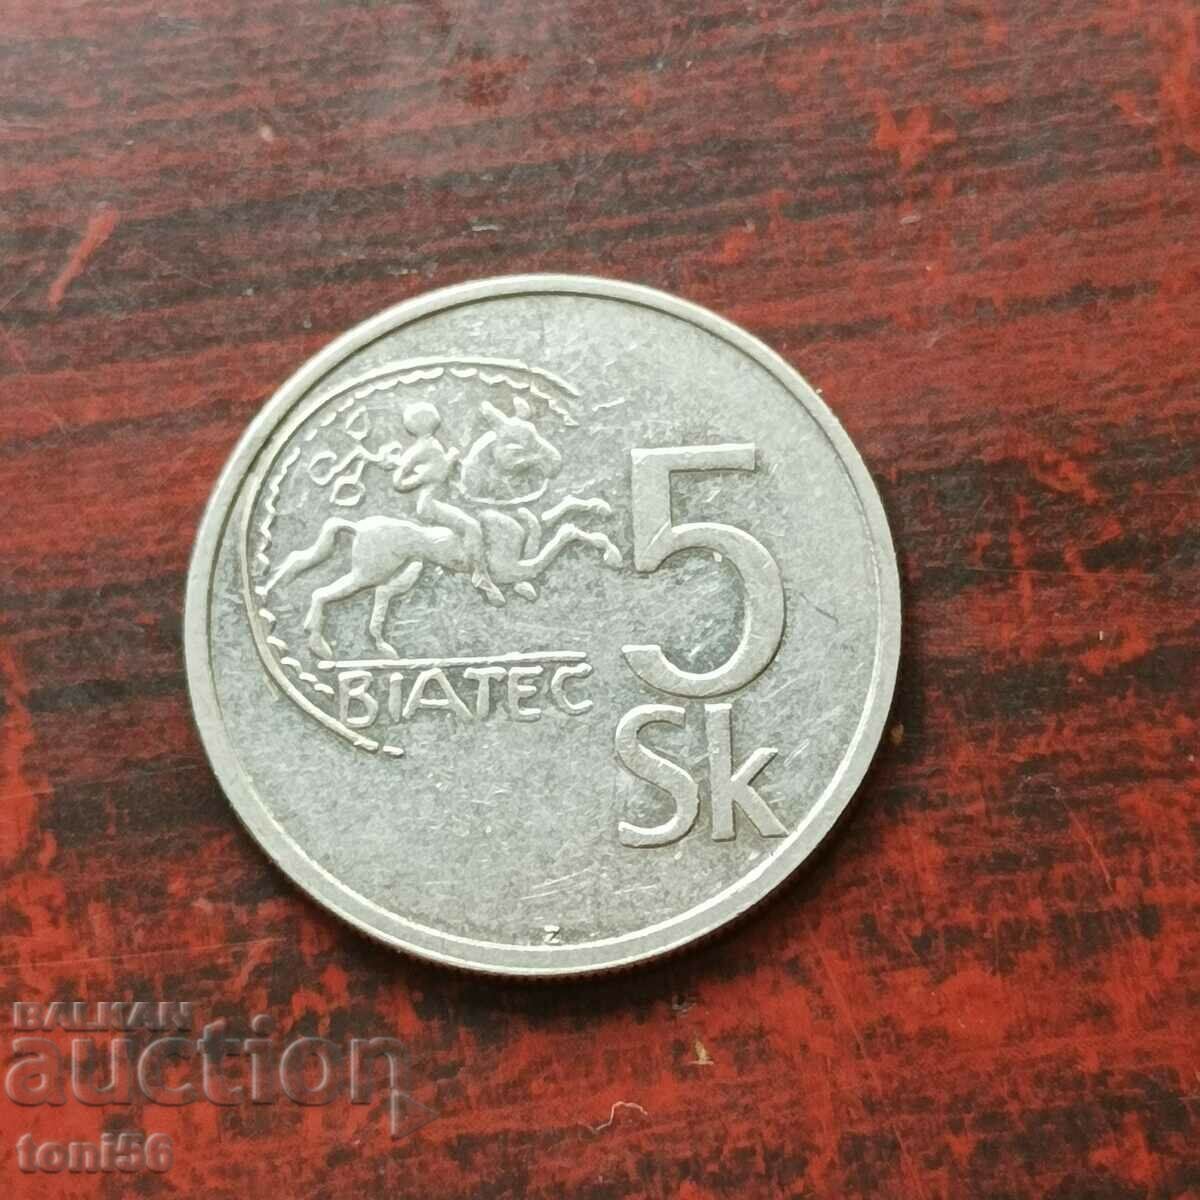 Slovacia 5 coroane 1993